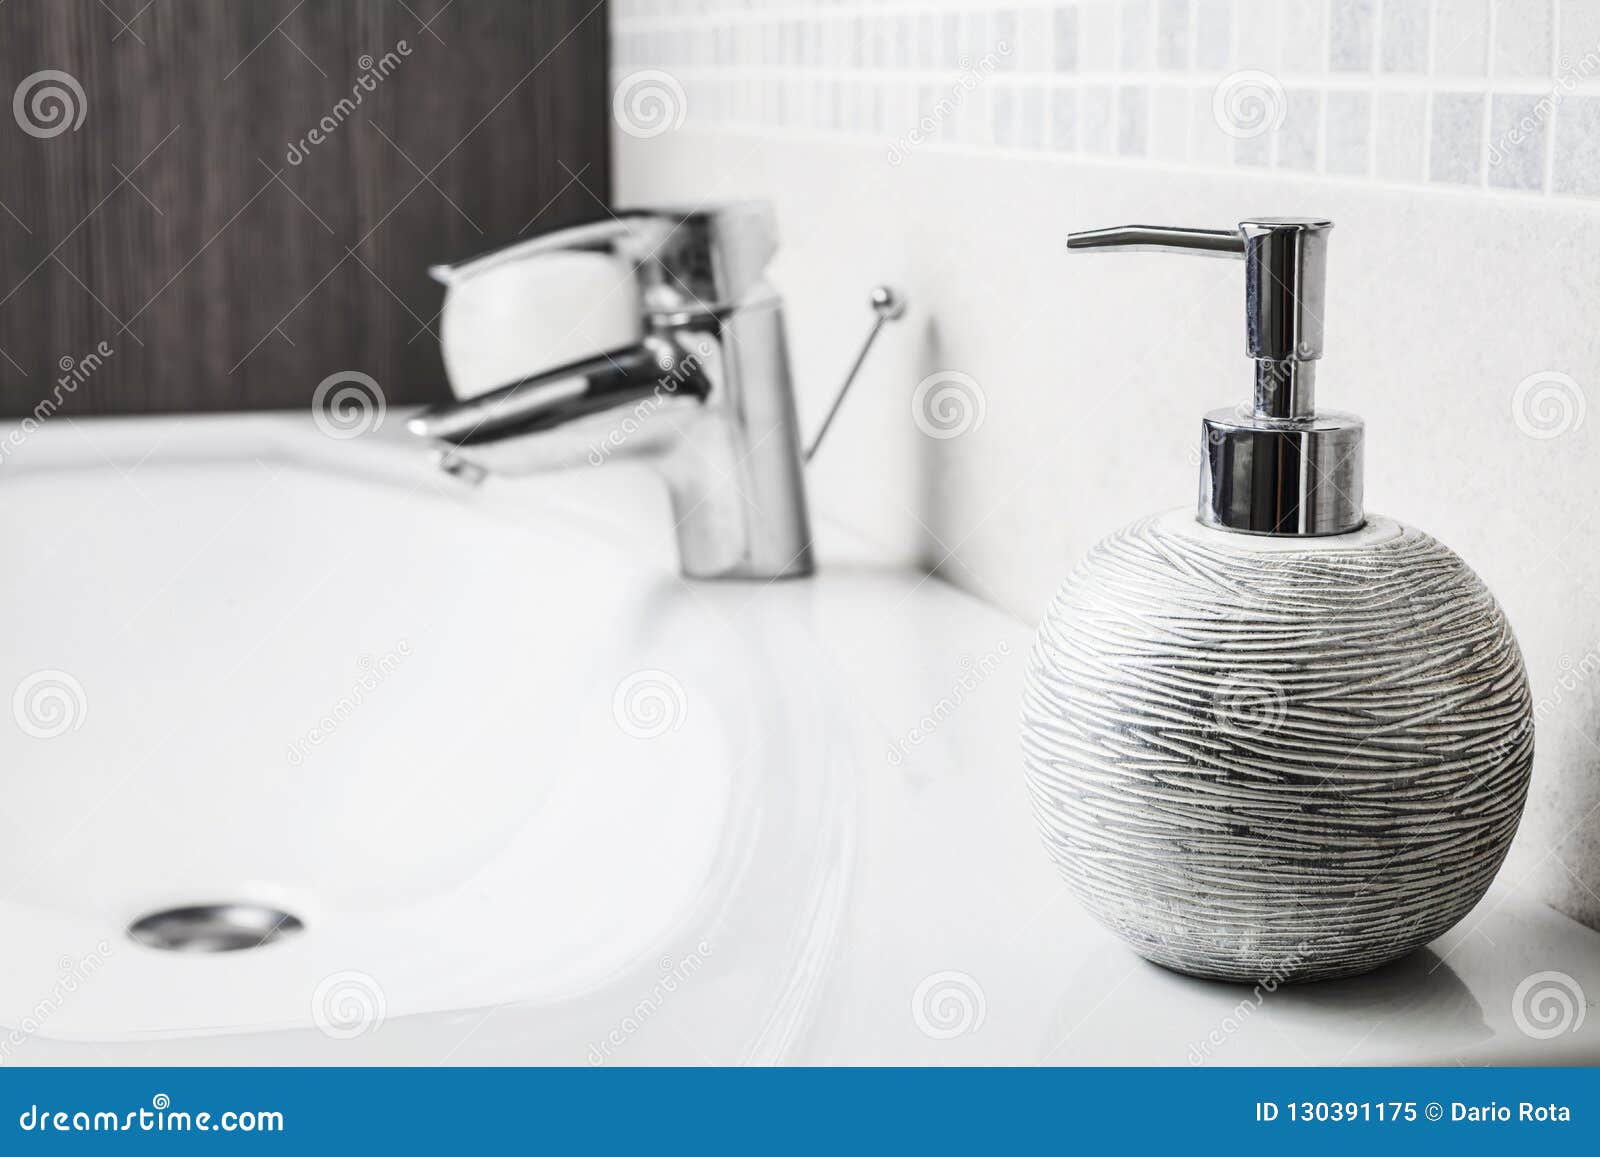 bathroom soap dispenser above sink